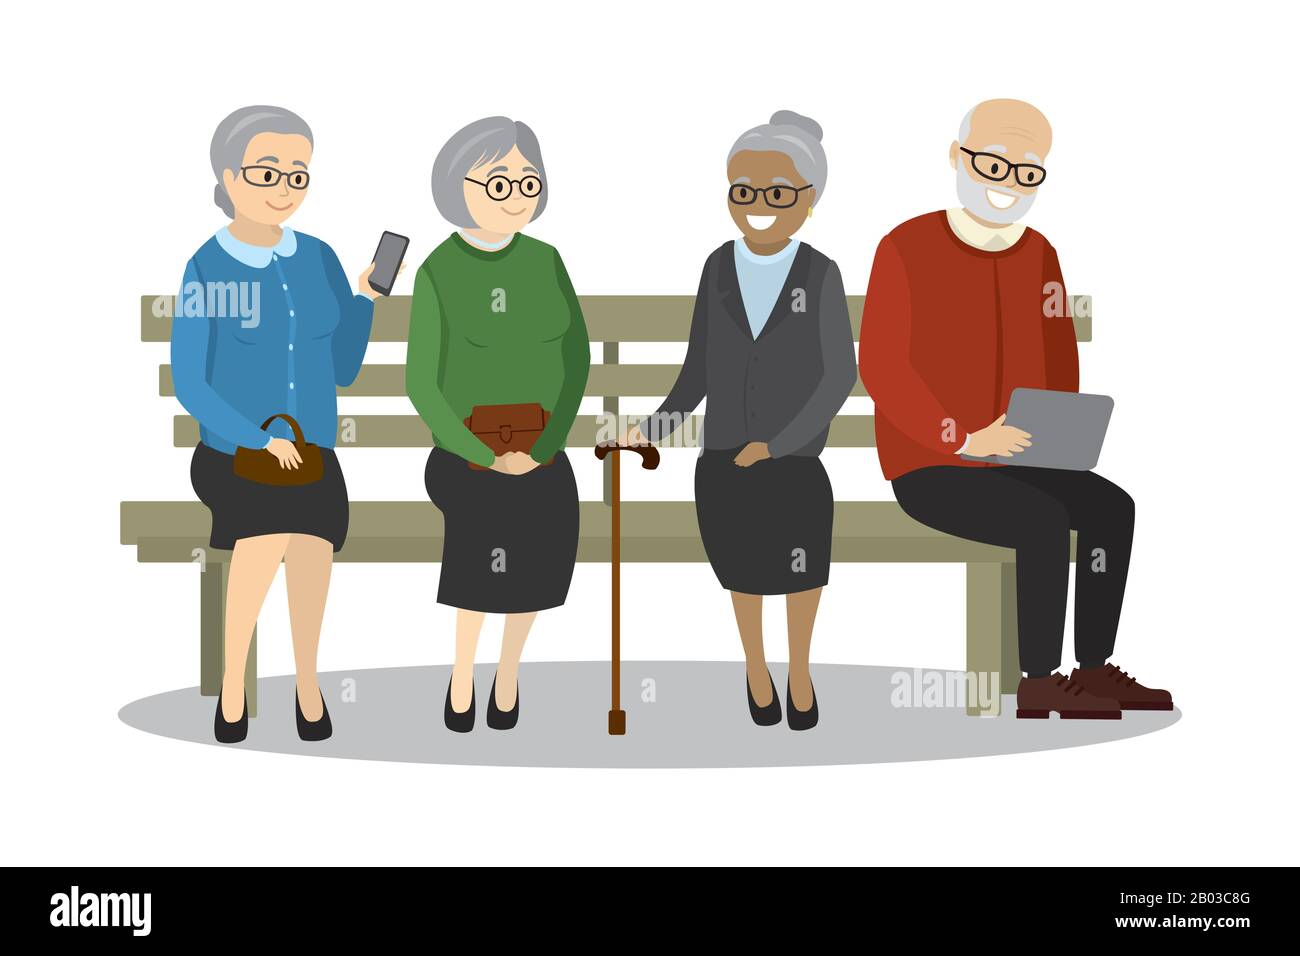 Alte Leute Oder Rentner Sitzen Auf Der Bank Isoliert Auf Weissem Hintergrund Cartoon Vektor Illustration Stock Vektorgrafik Alamy